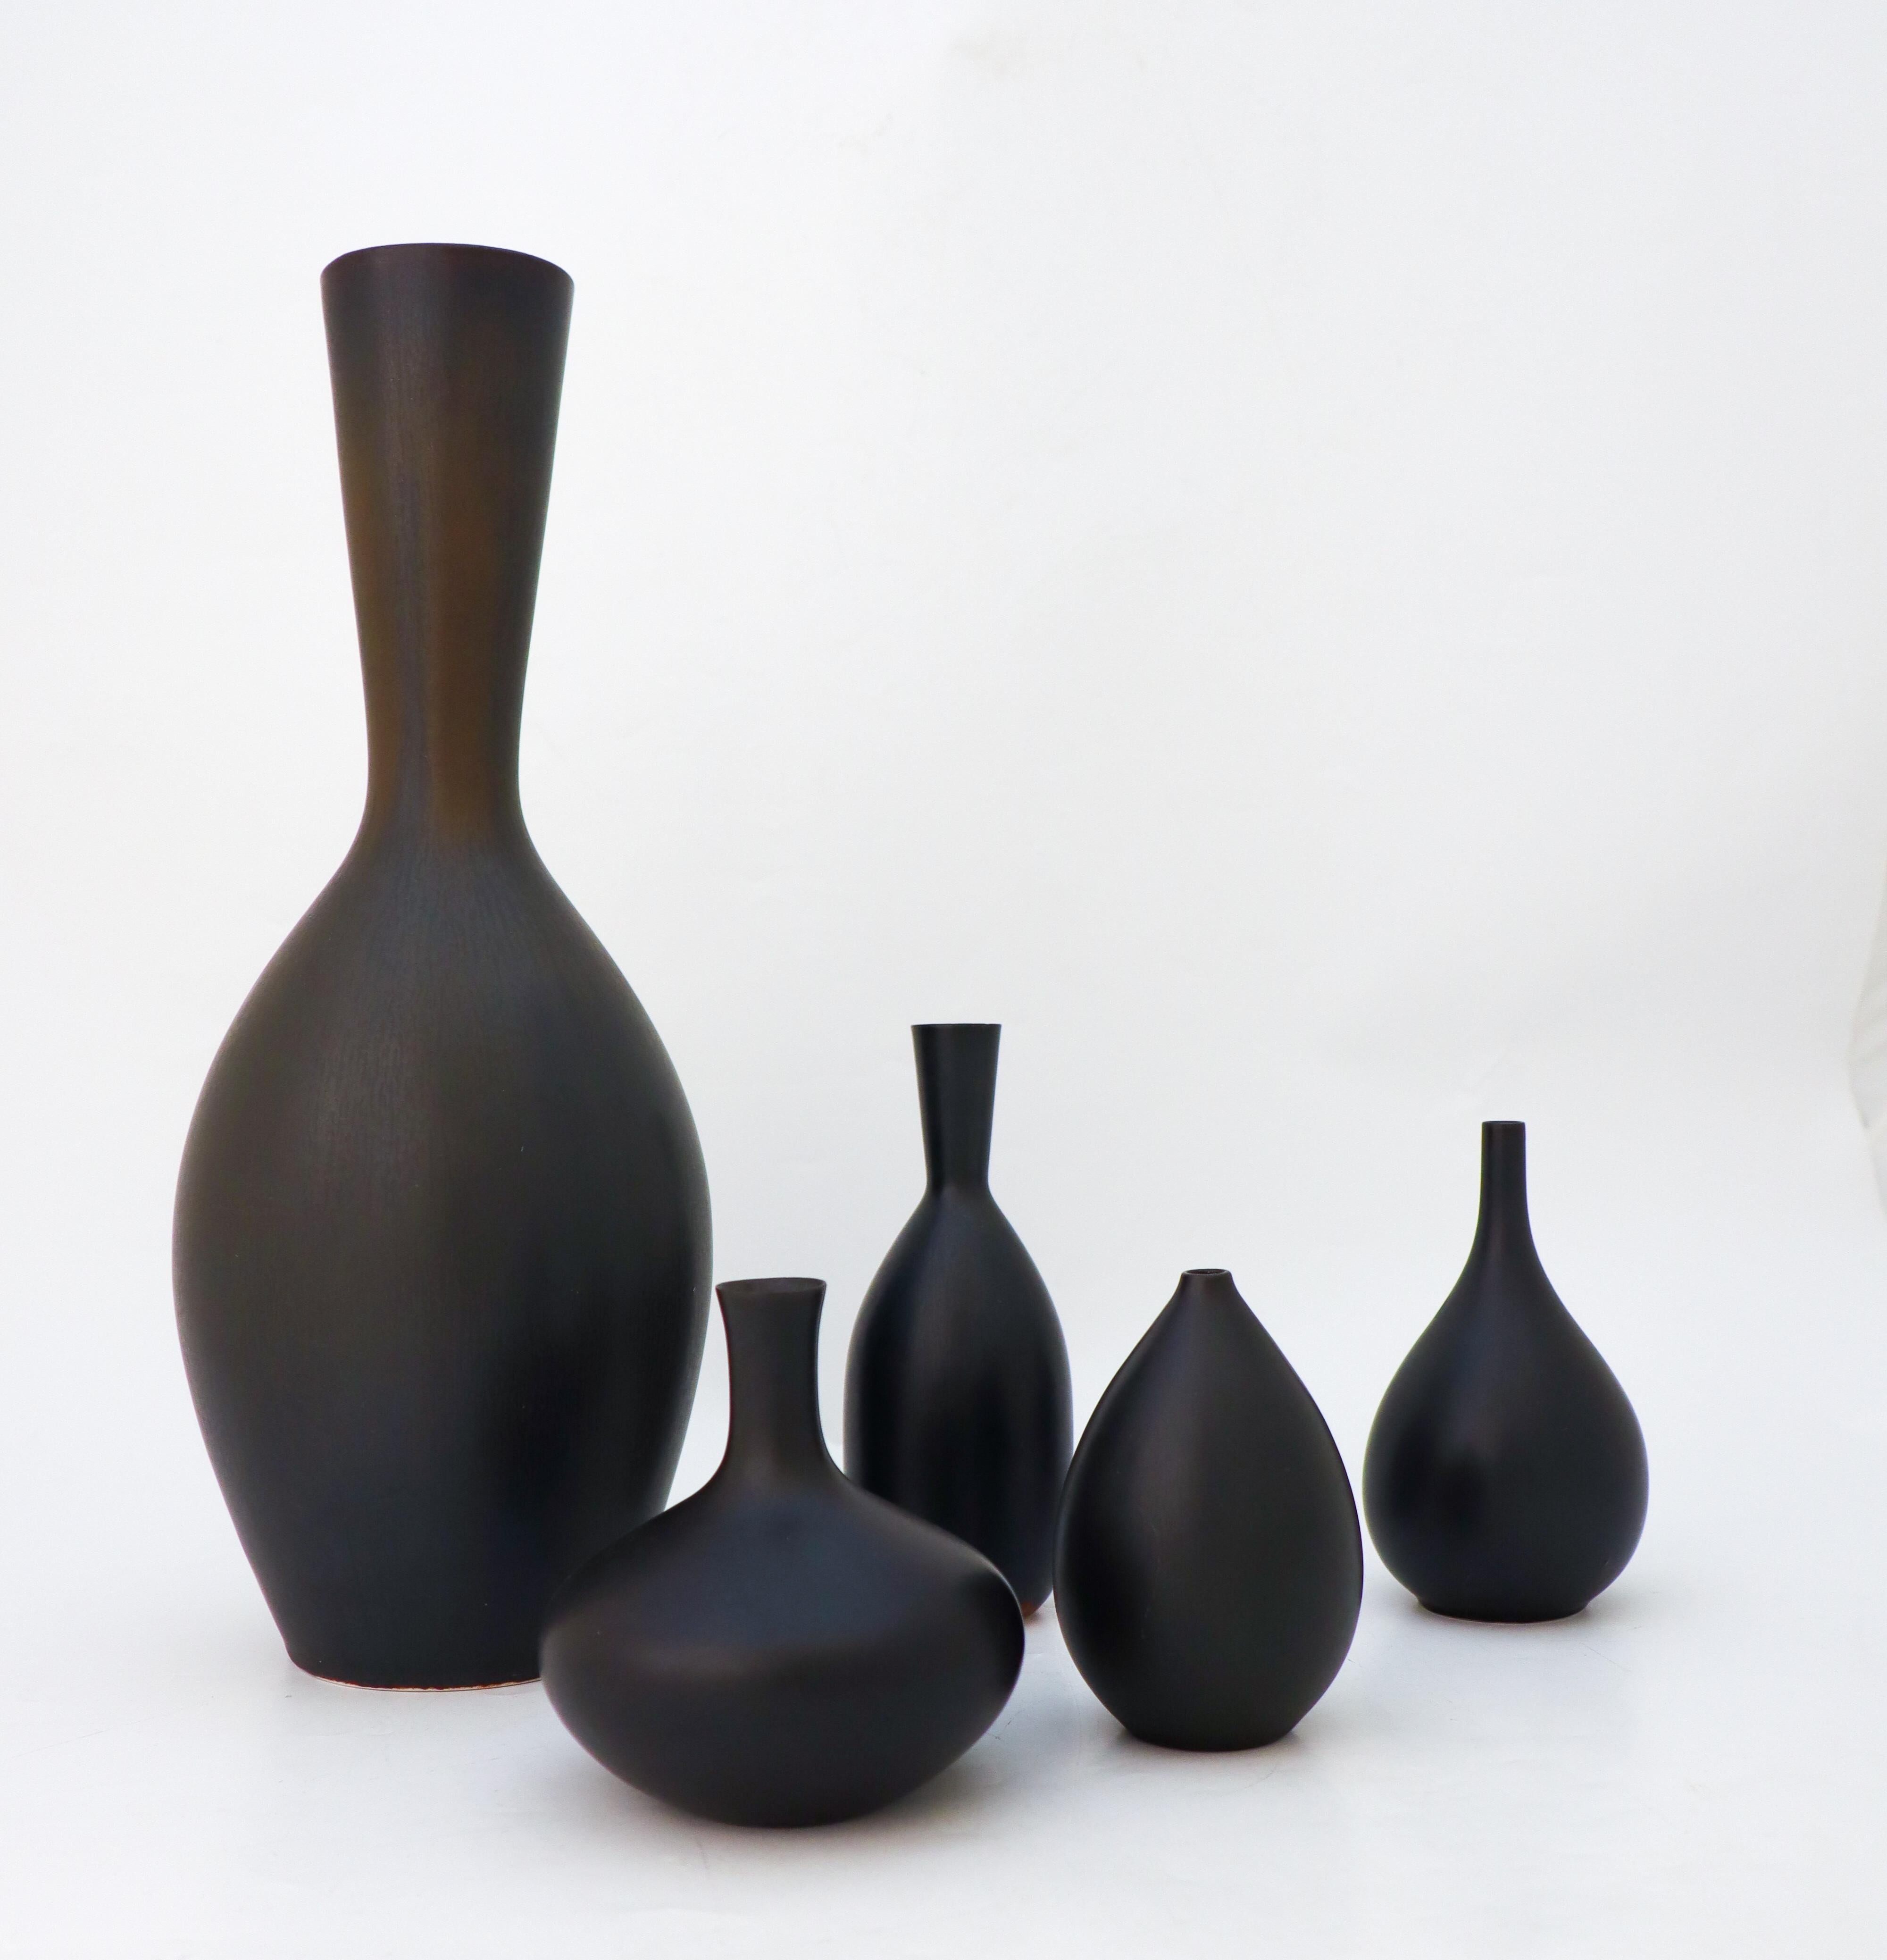 Eine Gruppe von fünf schwarzen Vasen, entworfen von Carl-Harry Stålhane bei Rörstrand. Die Vasen sind zwischen 10 und 34 cm hoch und in ausgezeichnetem Zustand, abgesehen von einigen kleinen Flecken und Kratzern. Drei der Vasen sind als 2. Qualität